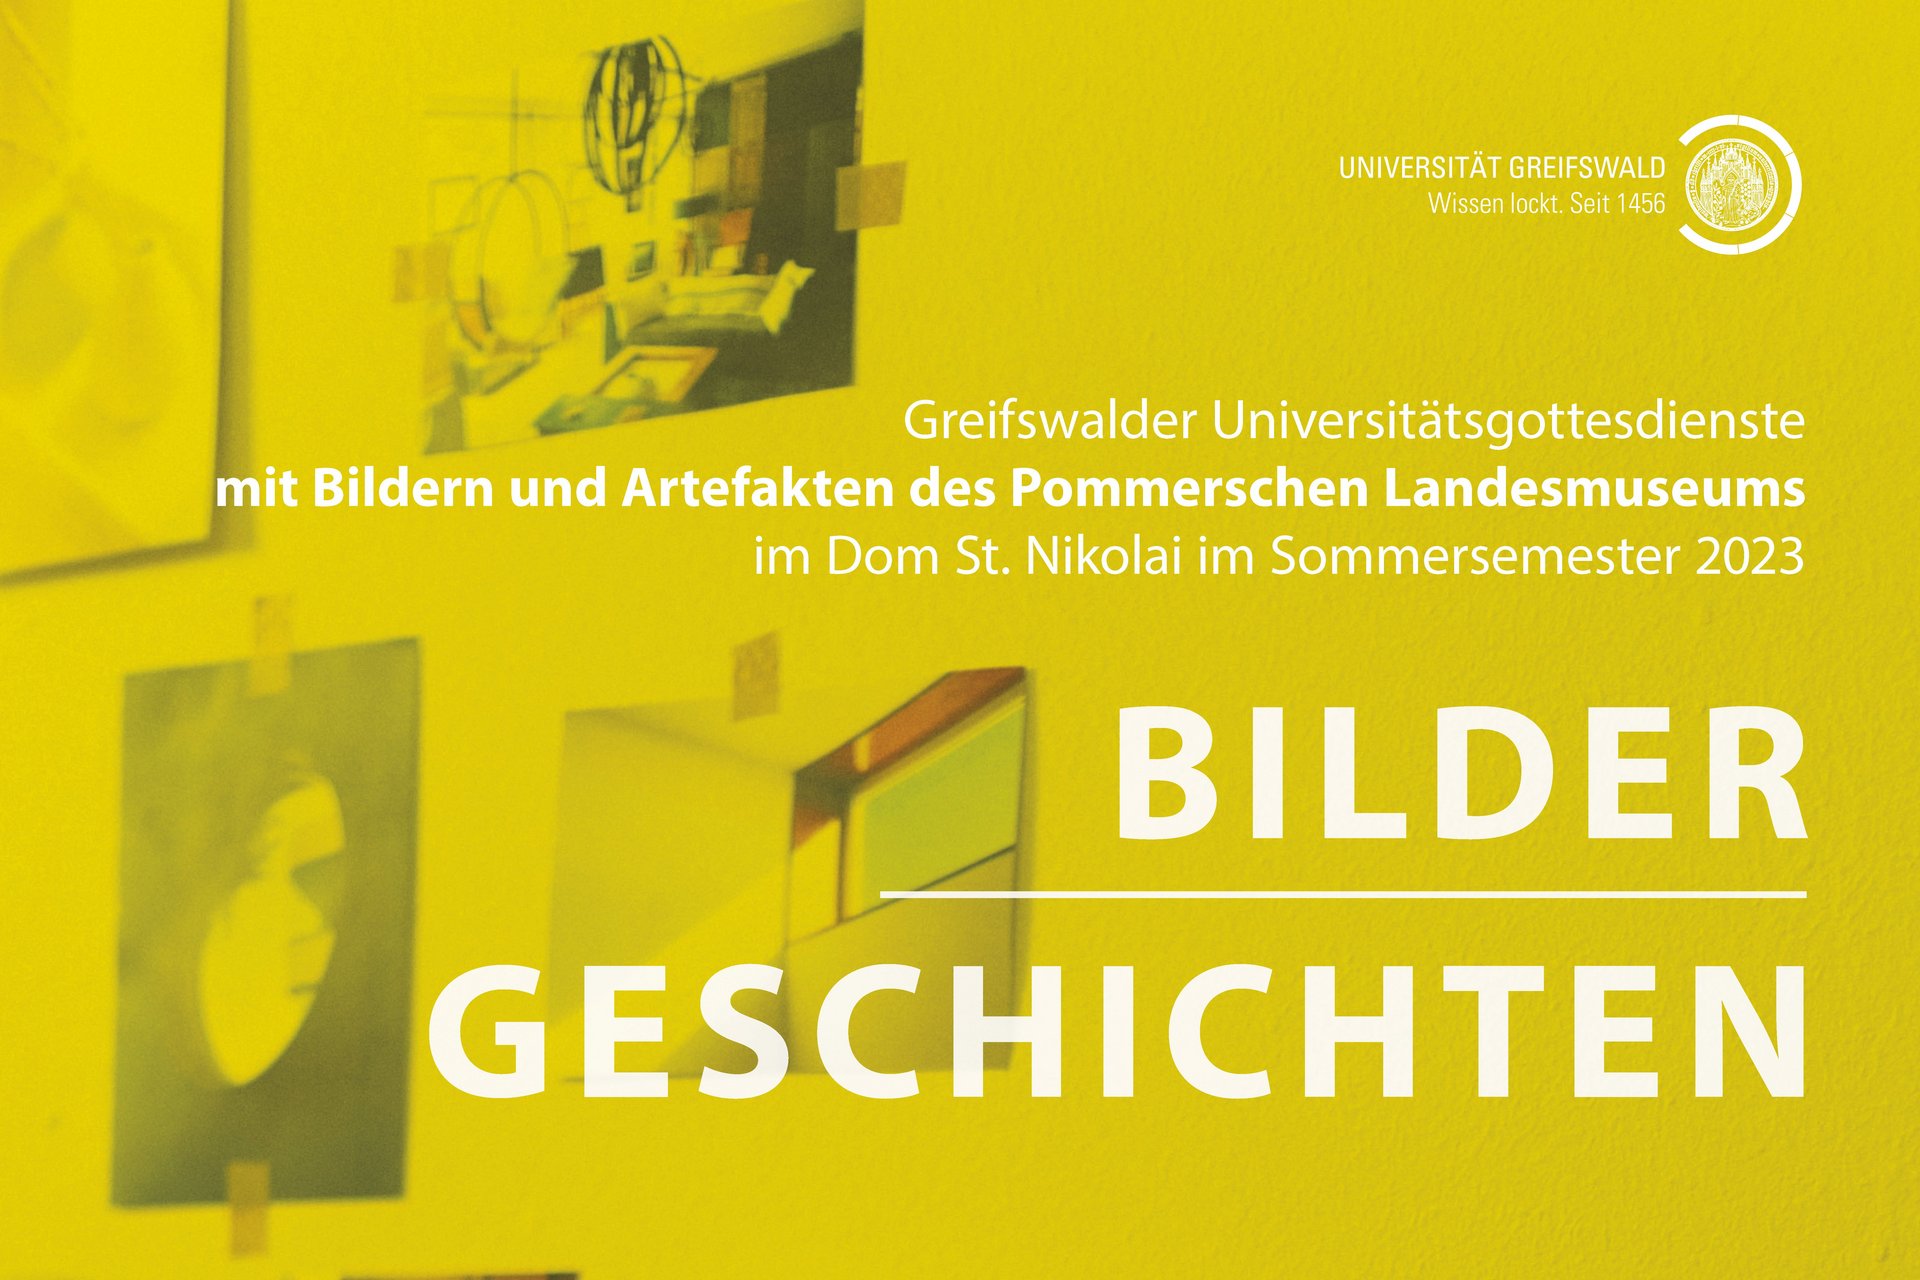 Plakat: Greifswalder Universitätsgottesdienste im Sommersemester 2023. Bilder-Geschichten